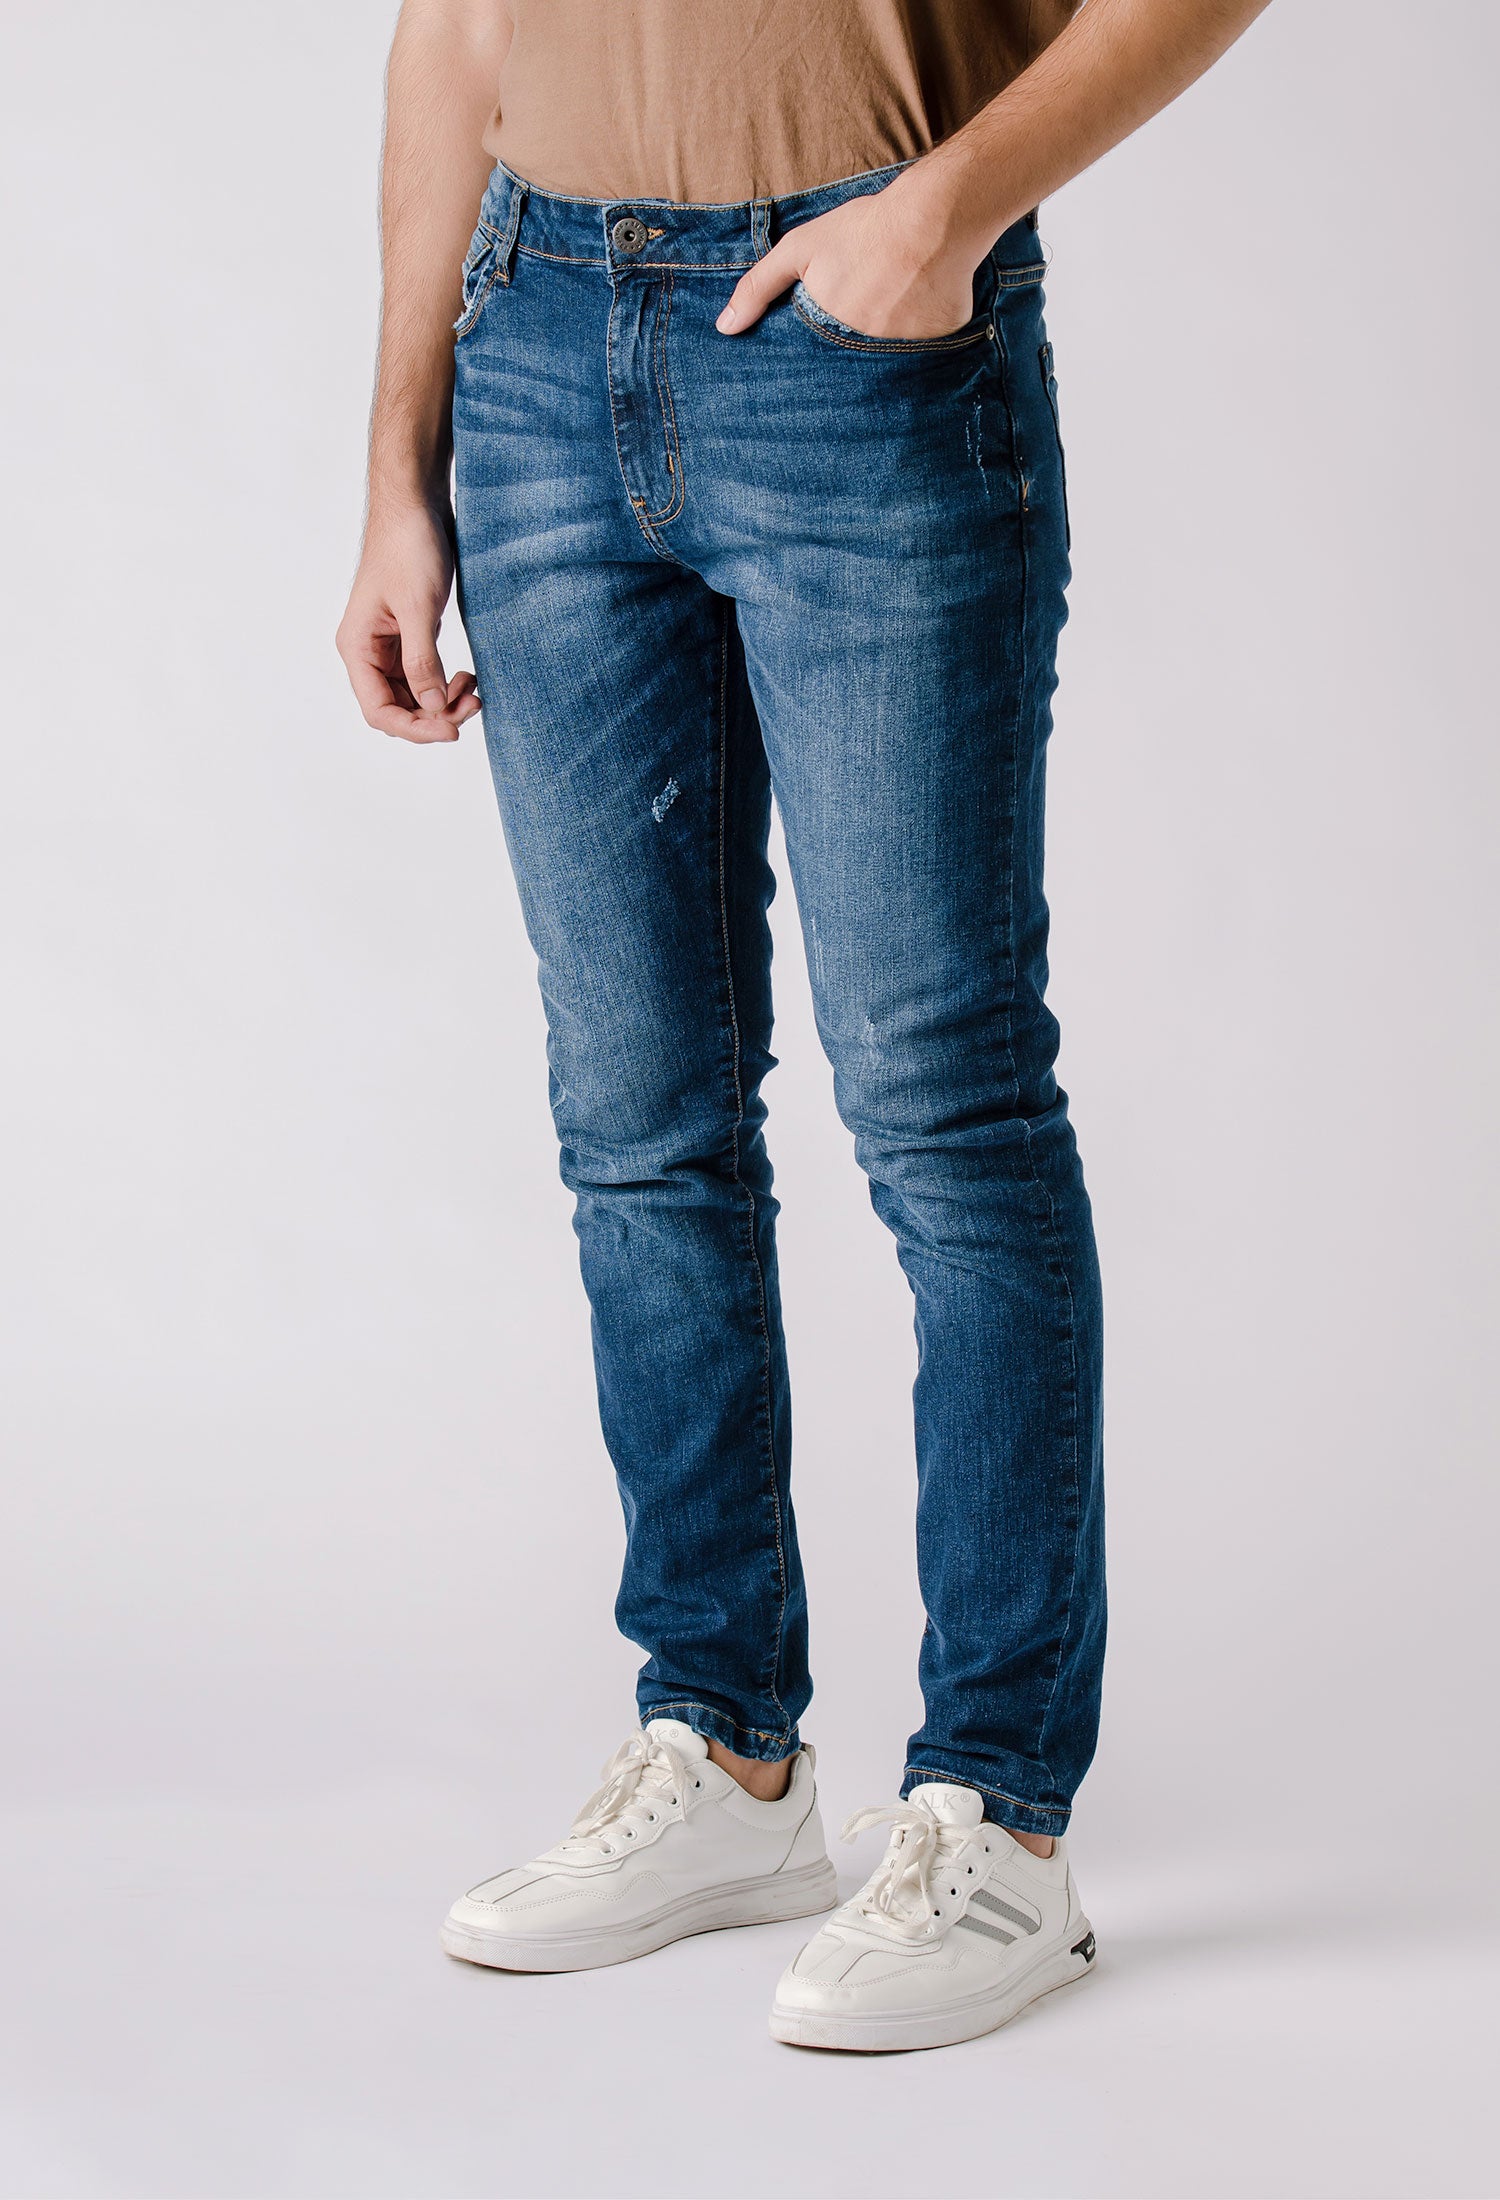 Indigo Distressed Denim Jeans (DNM-000004)